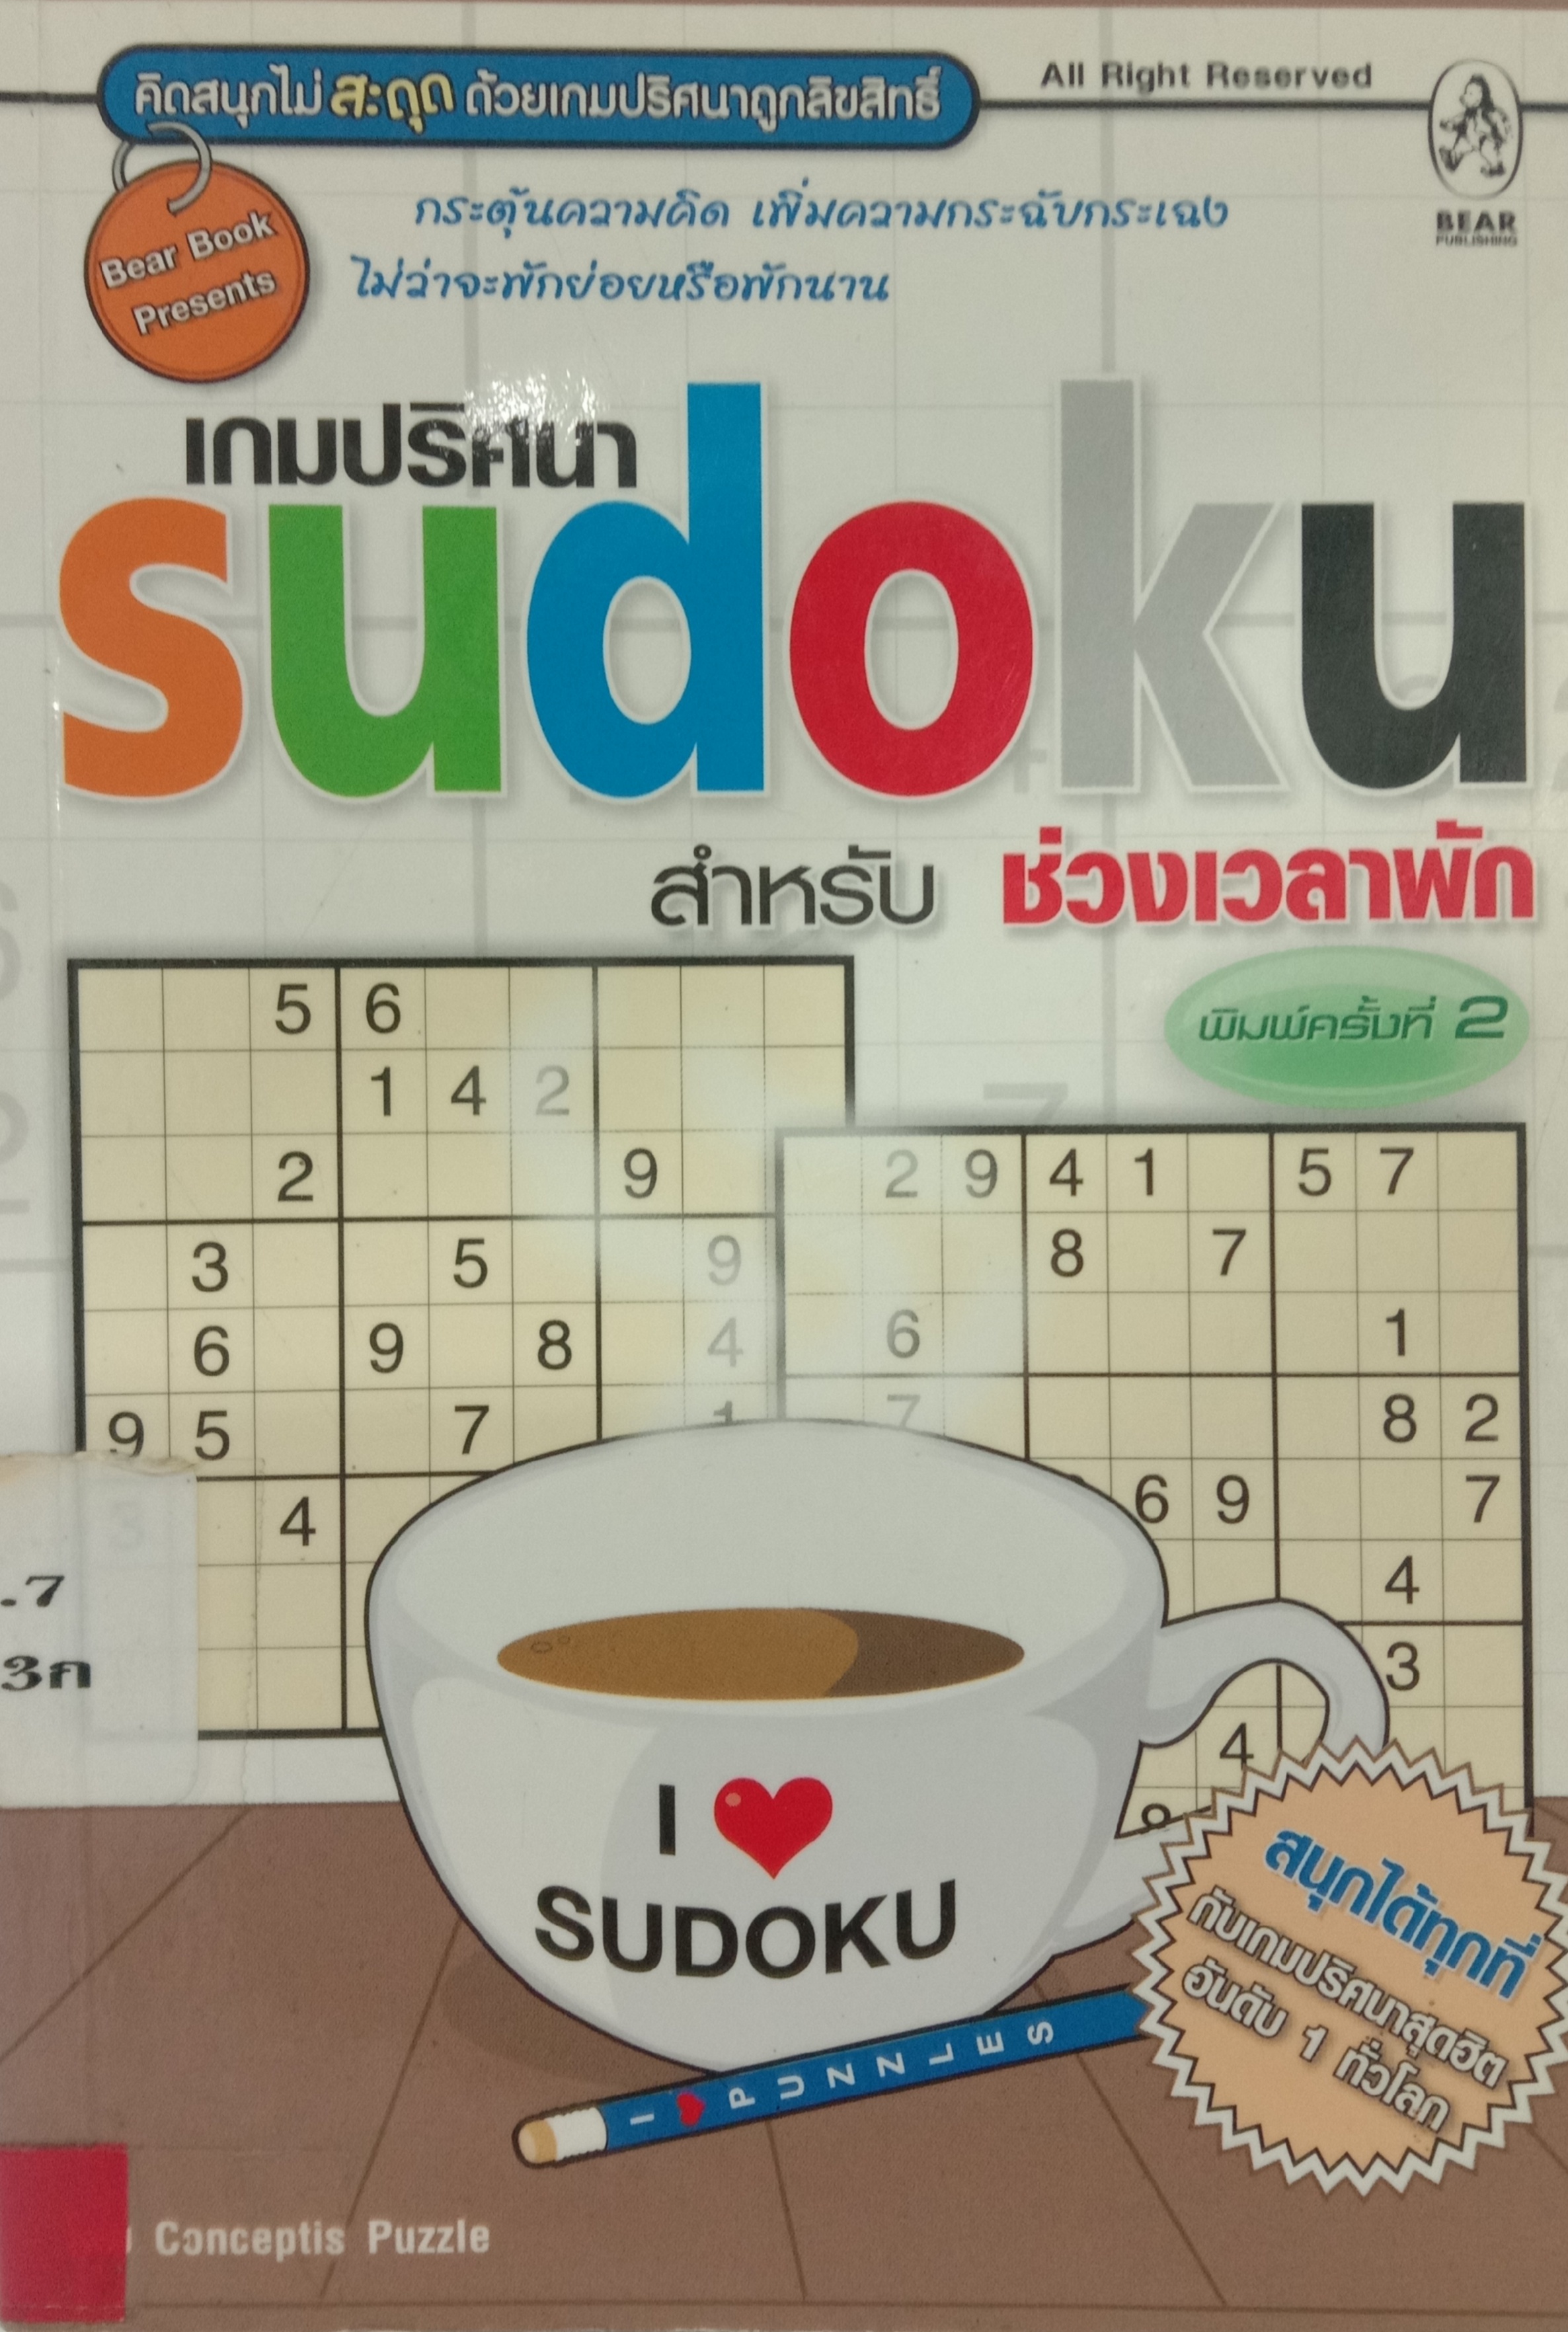 เกมปริศนา SUDOKU สำหรับช่วงเวลาพัก